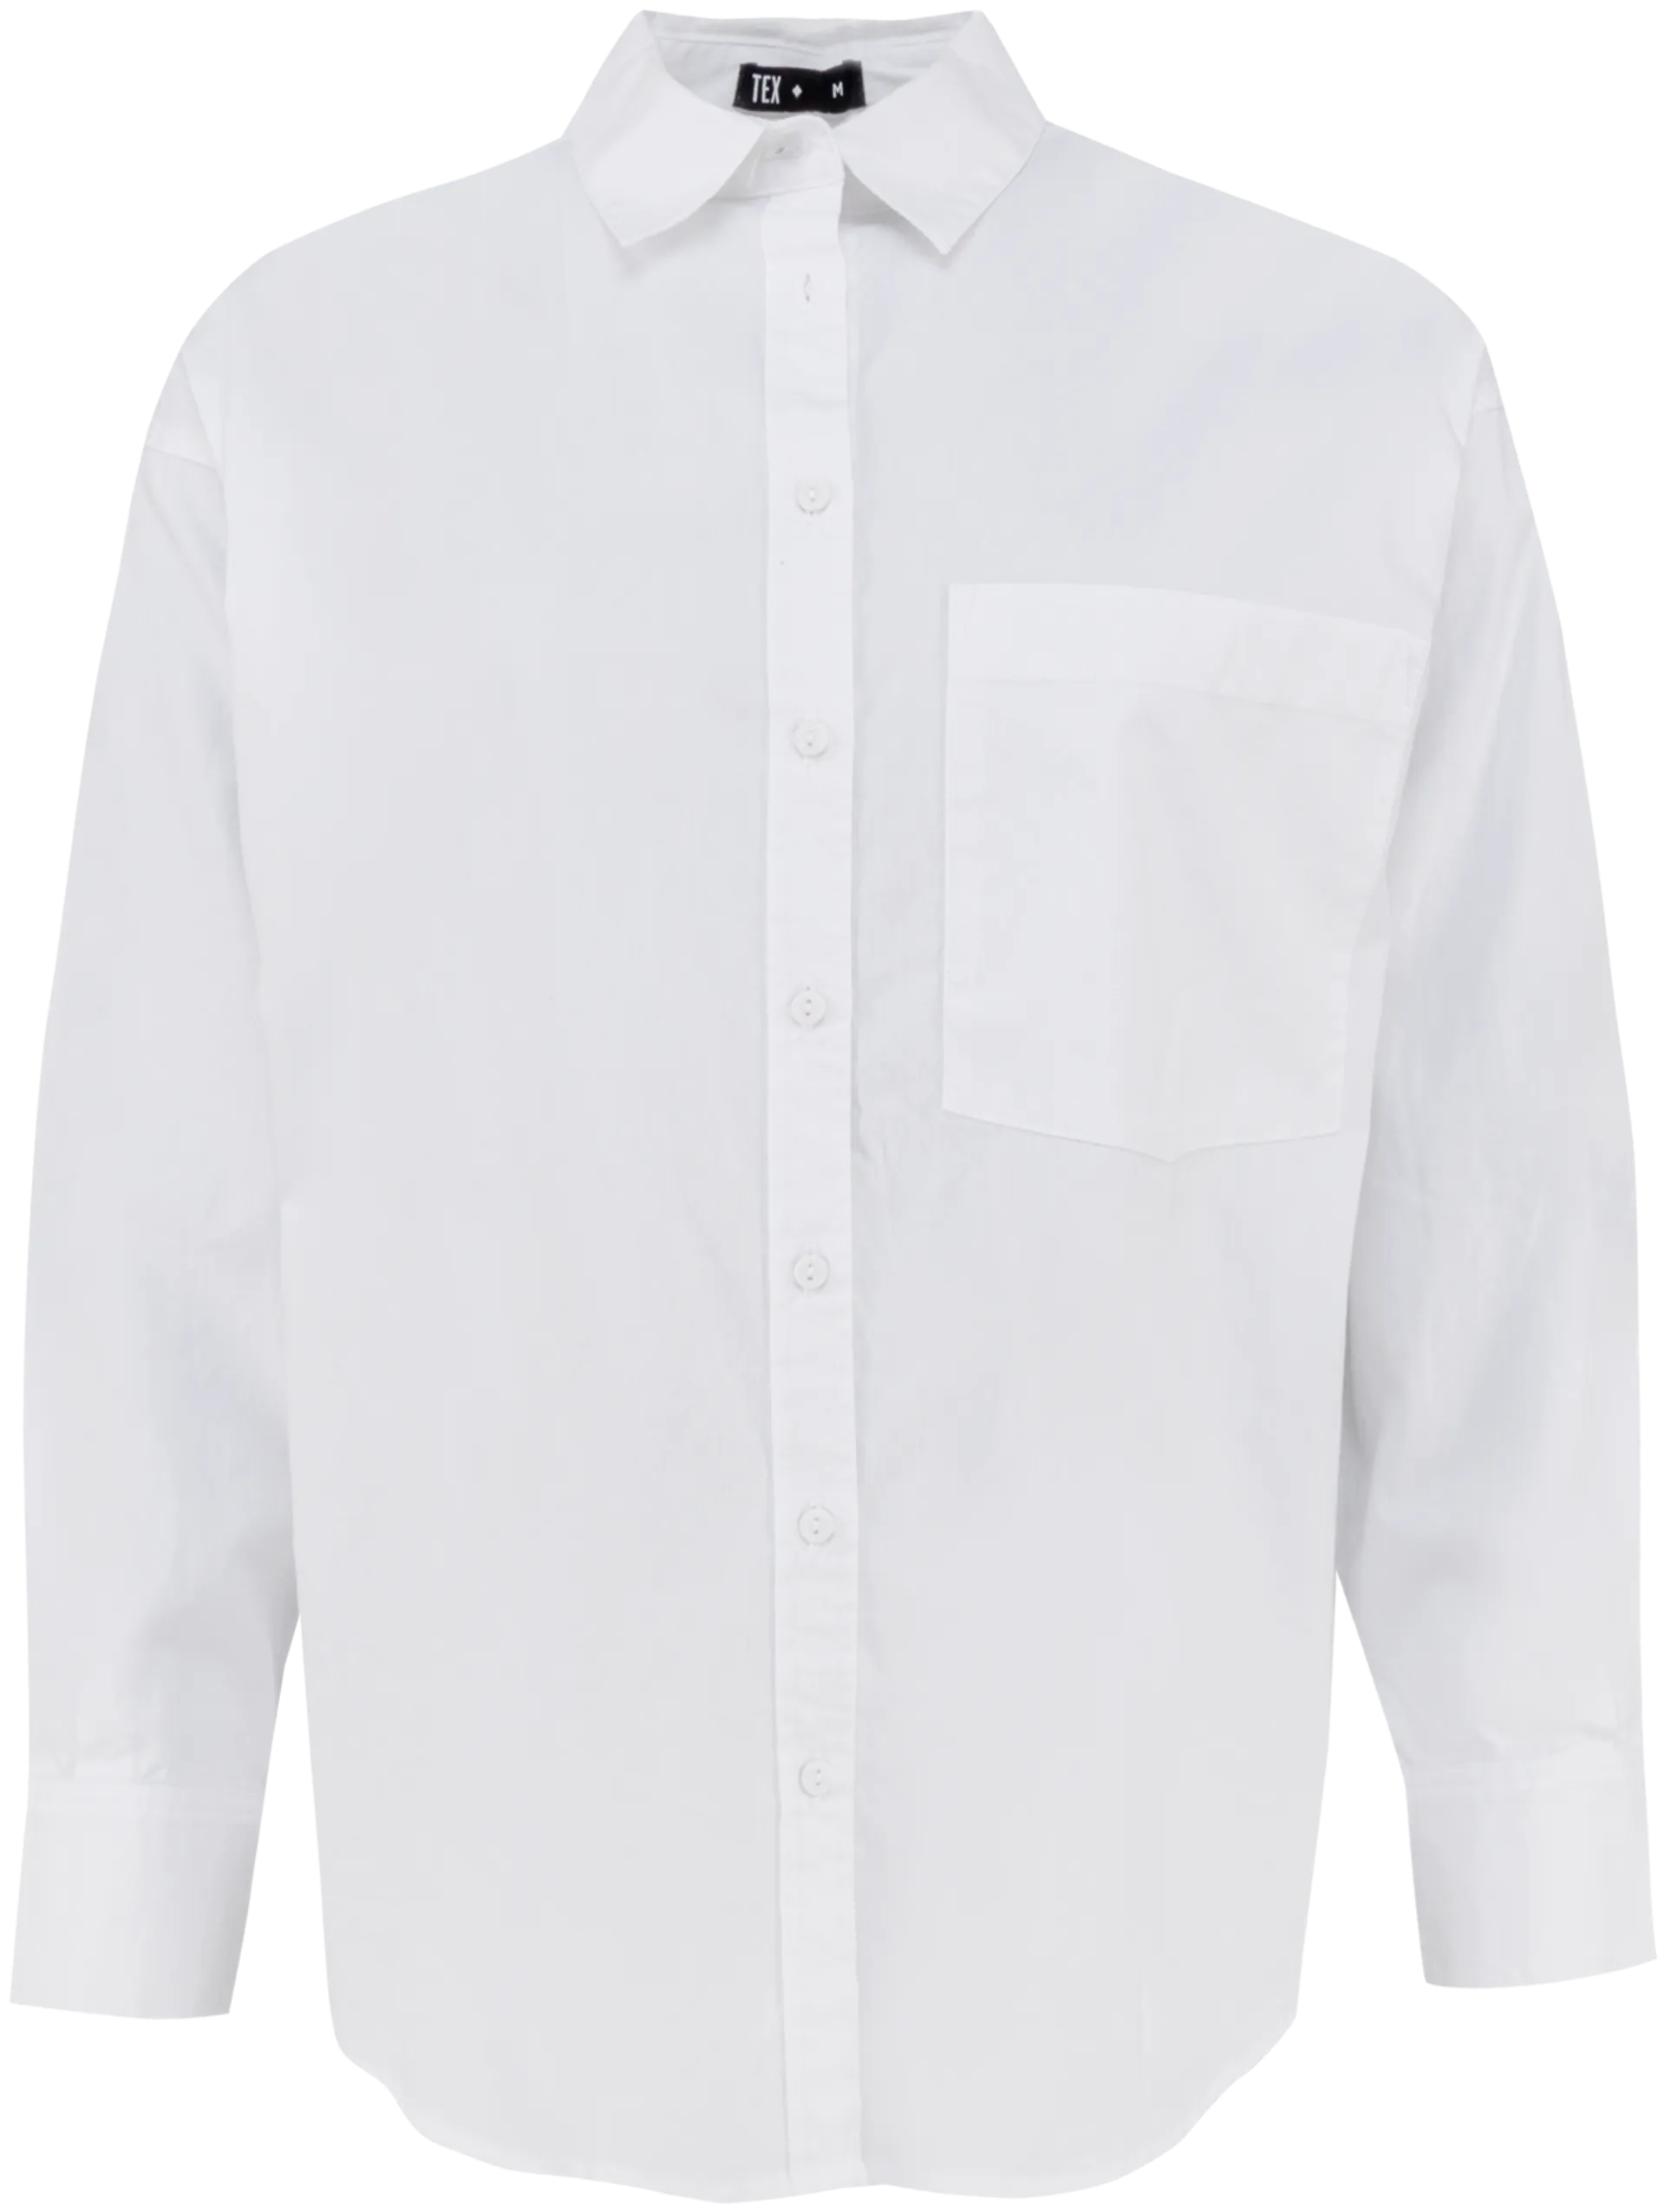 TEX naisten paitapusero I958369 - WHITE 1 - 1